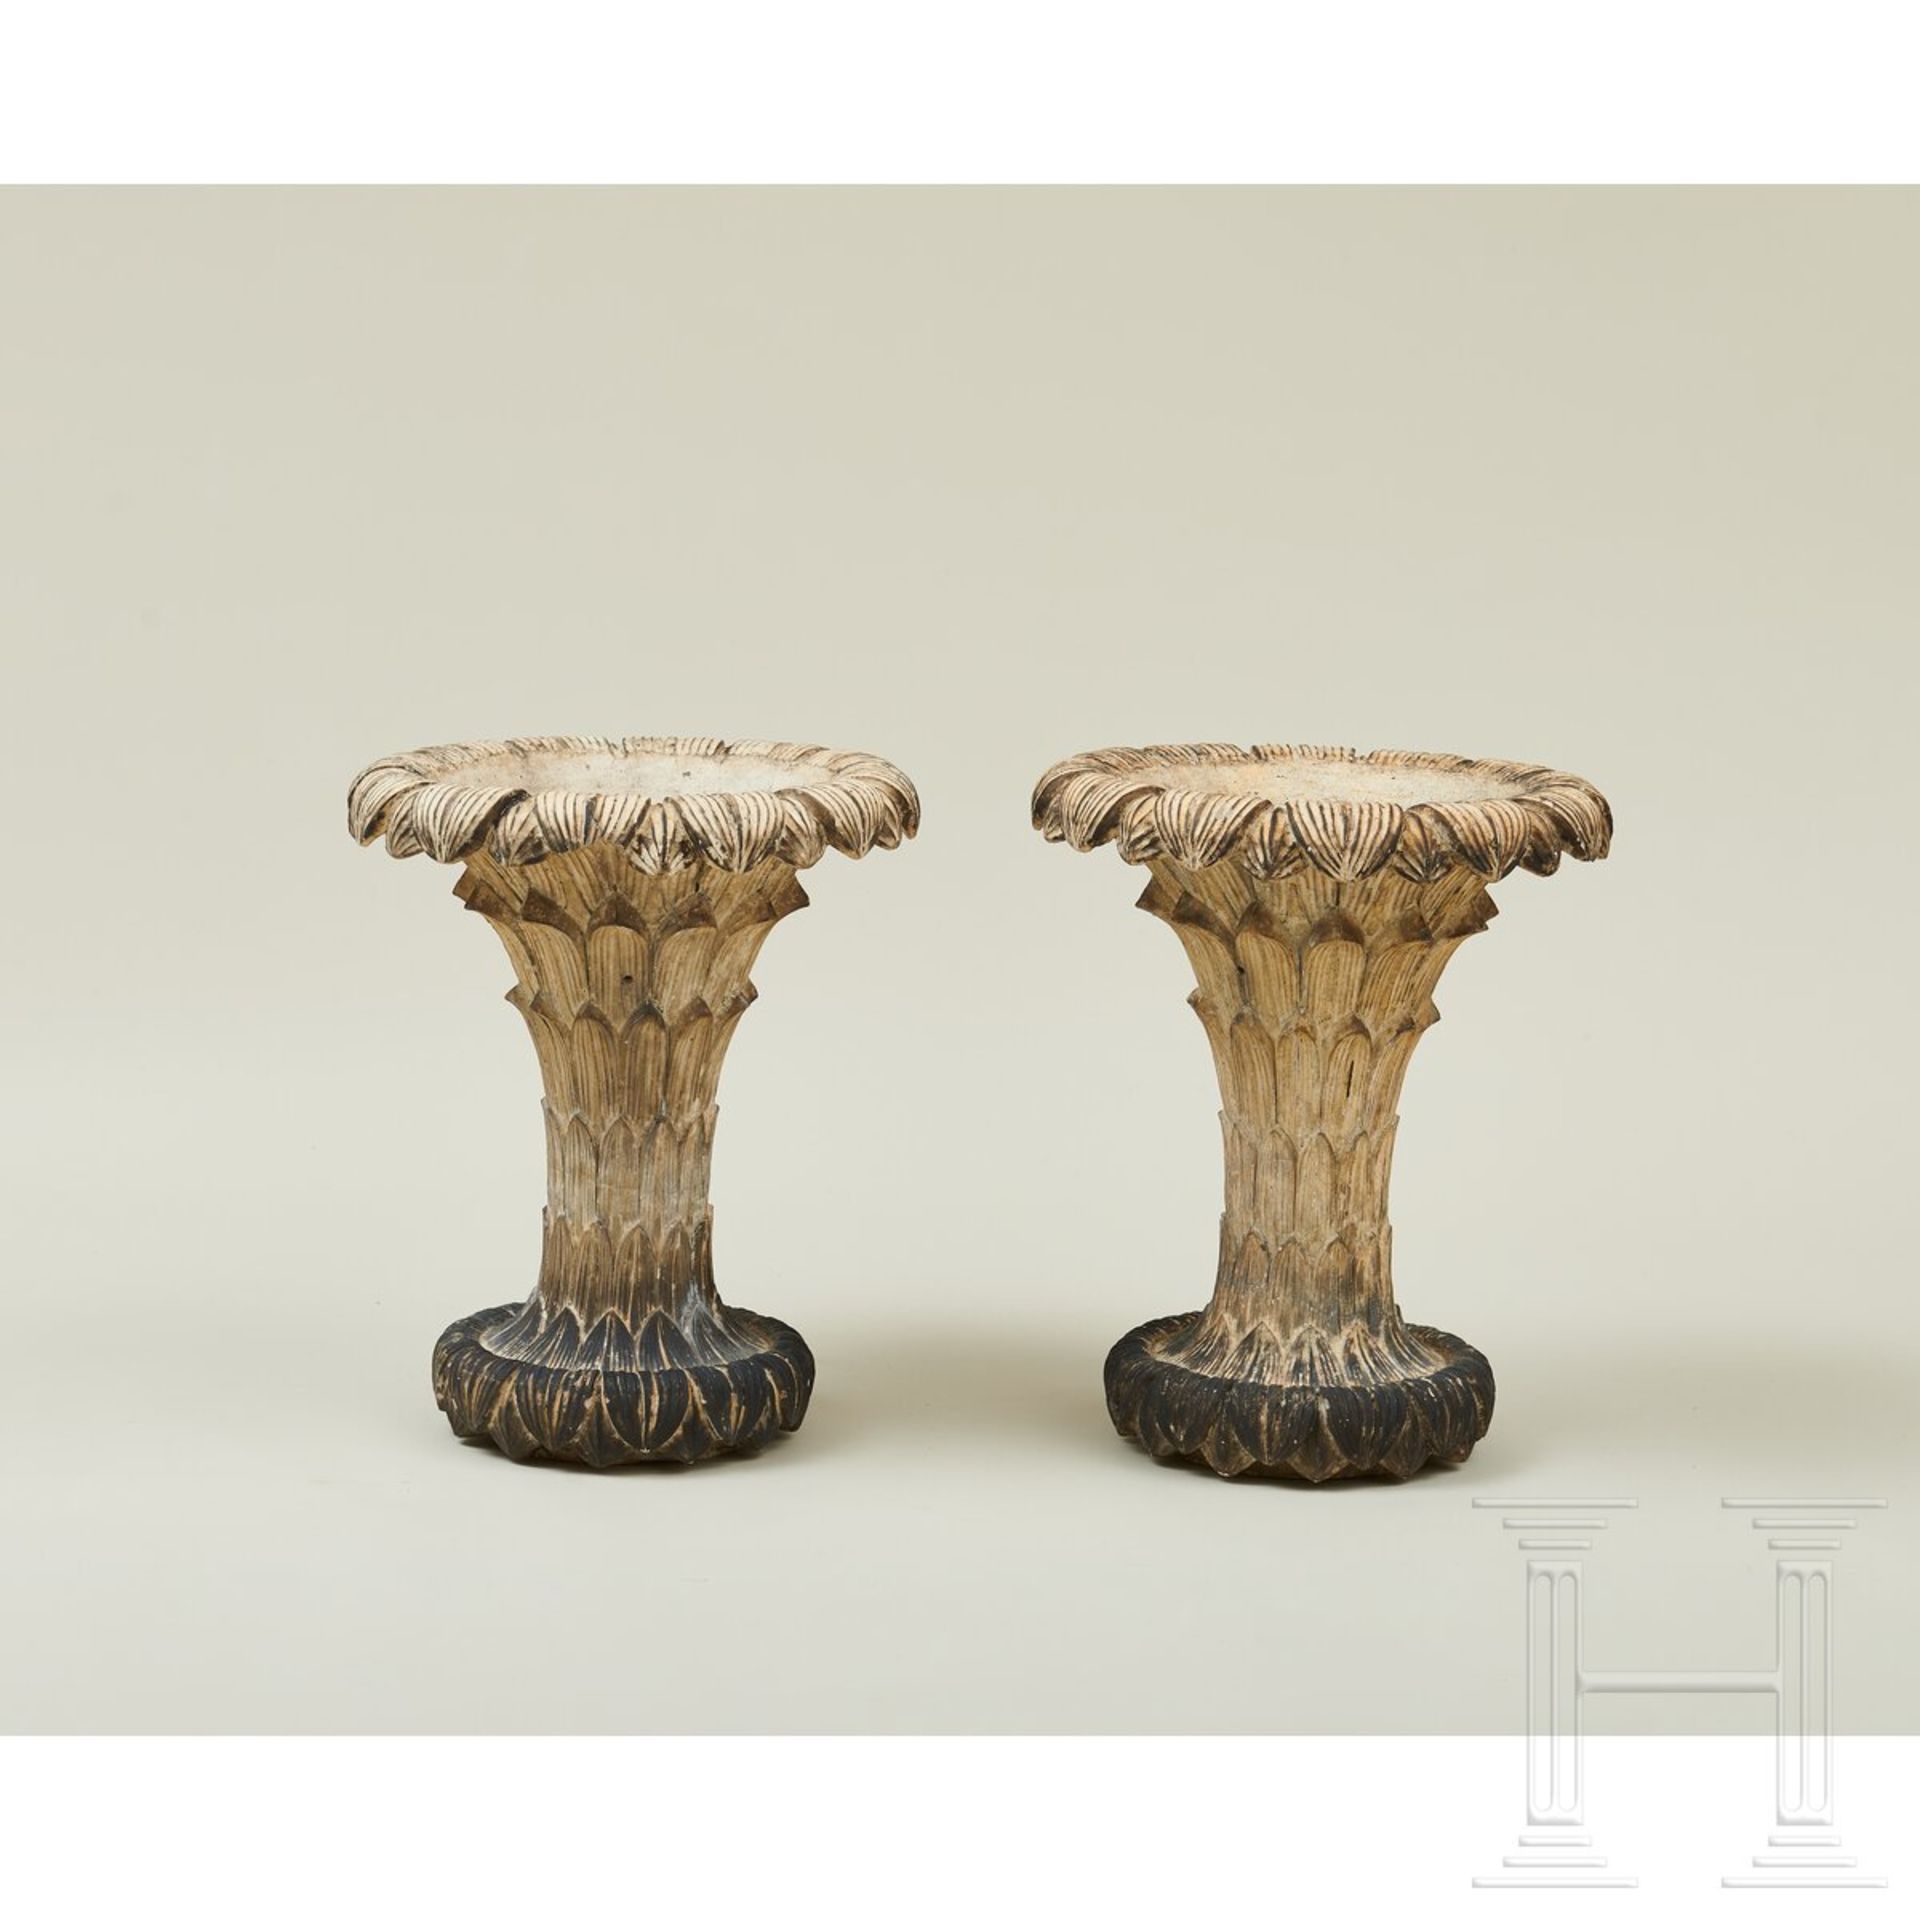 Ein Paar Terrakotta-Vasen, wohl Berlin, 1. Hälfte 19. Jhdt. - Image 2 of 6